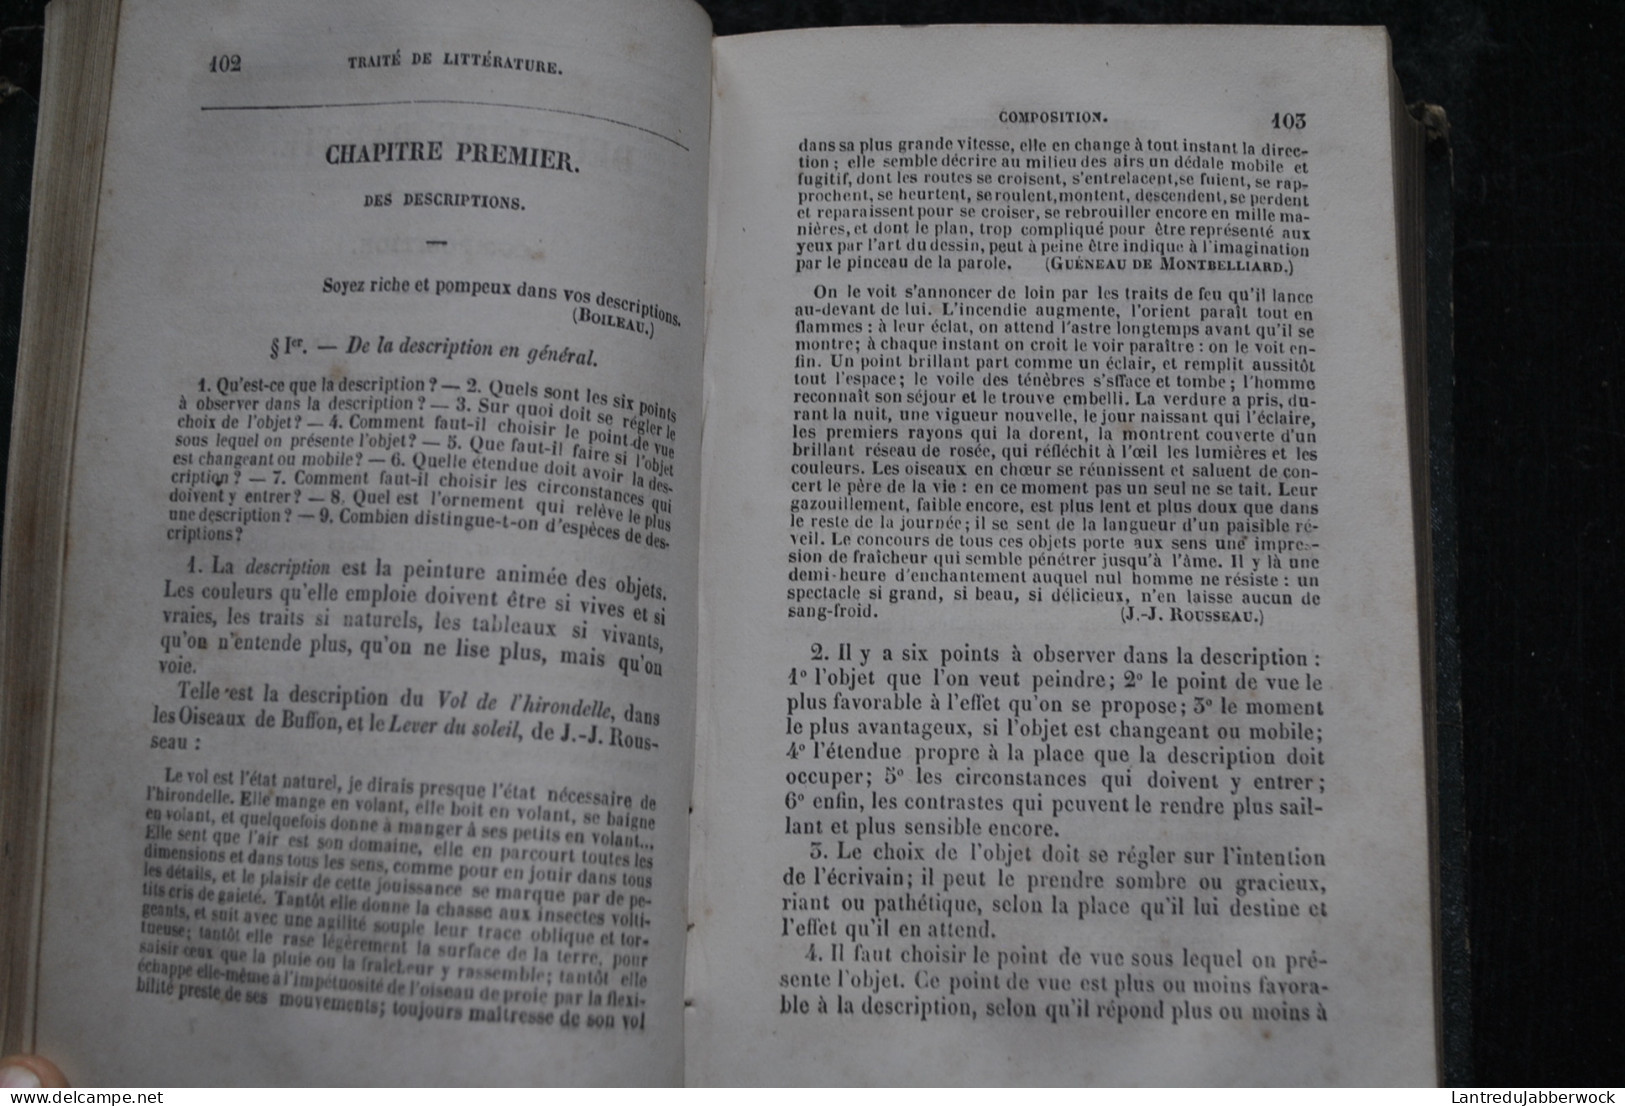 LEFRANC Traité Théorique Et Pratique De Littérature Rédigé Spécialement Pour Les Communautés Religieuses 1849 7è Ed. - Religion